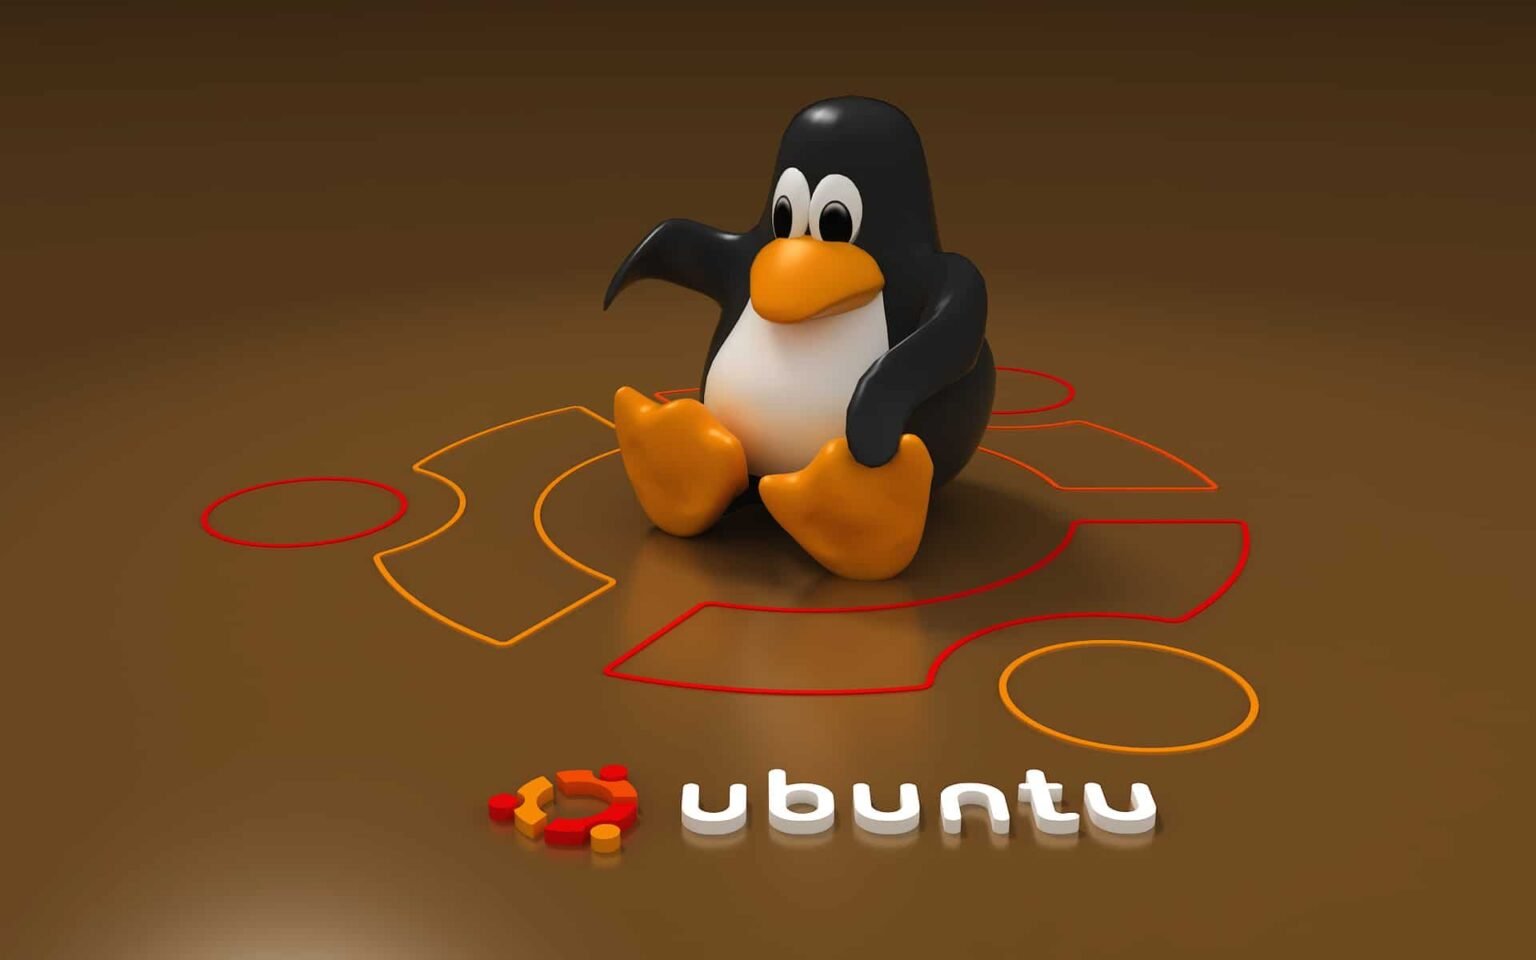 install openjdk 11 ubuntu 18.